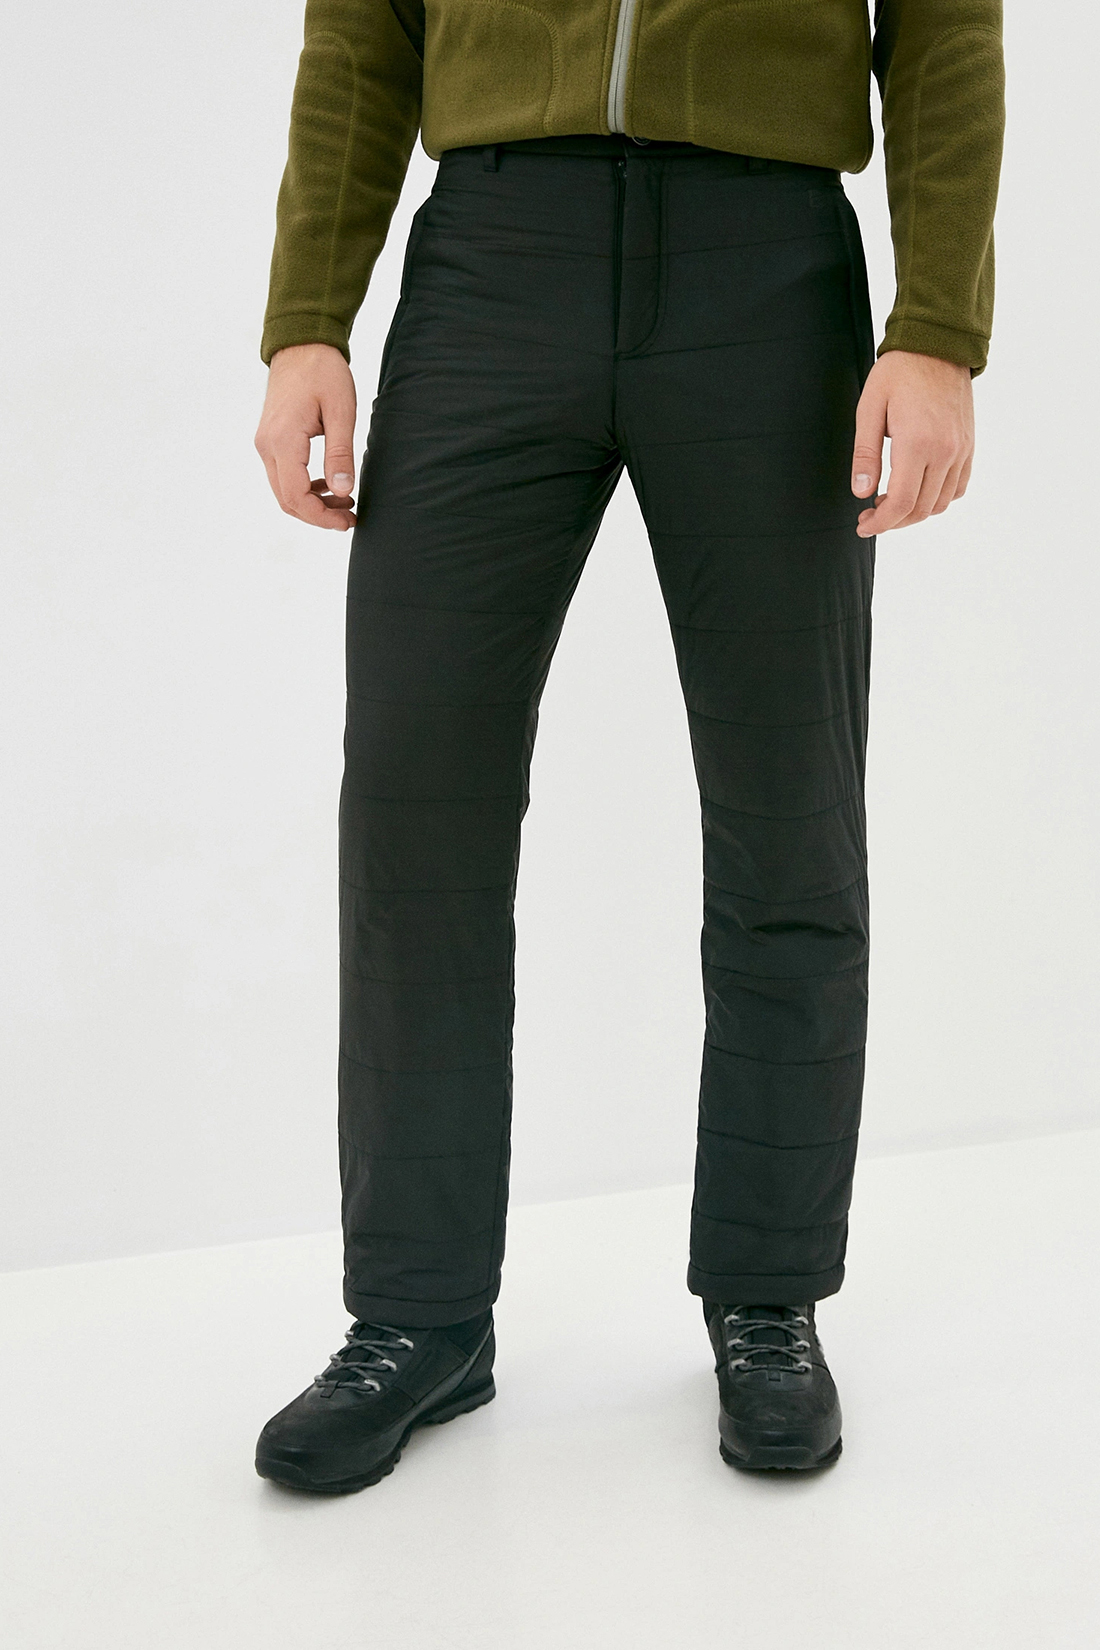 Утеплённые брюки с подкладкой из флиса (арт. baon B799522), размер 3XL, цвет черный Утеплённые брюки с подкладкой из флиса (арт. baon B799522) - фото 1